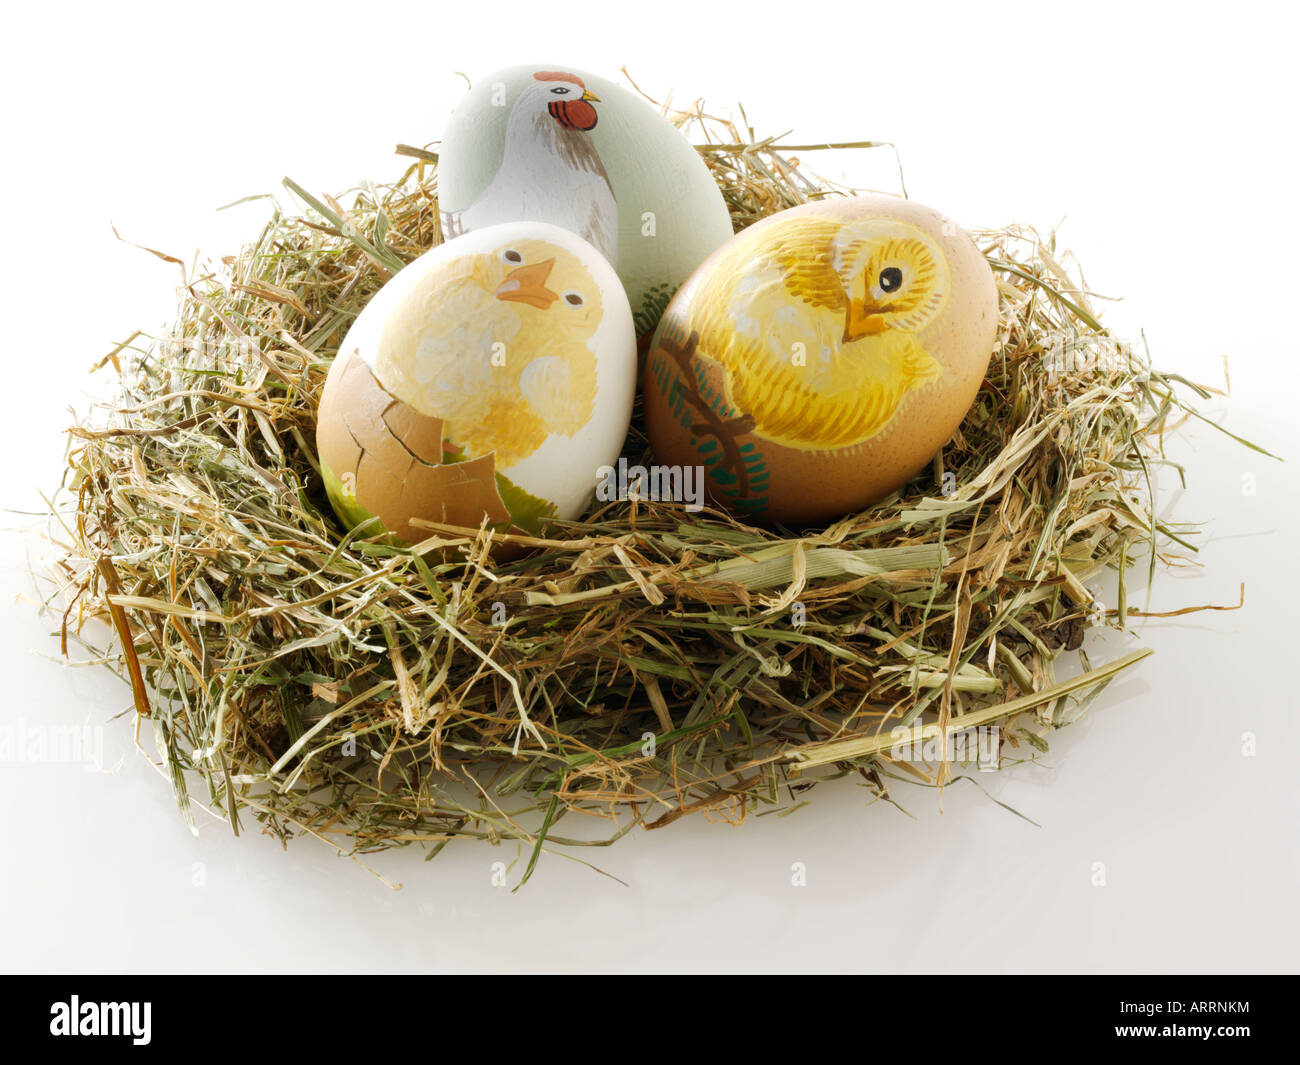 Traditionelle lackiert Ostern Huhn Ei in einen Strohhalm Birds Nest - Begriff Dekoration Stockfoto